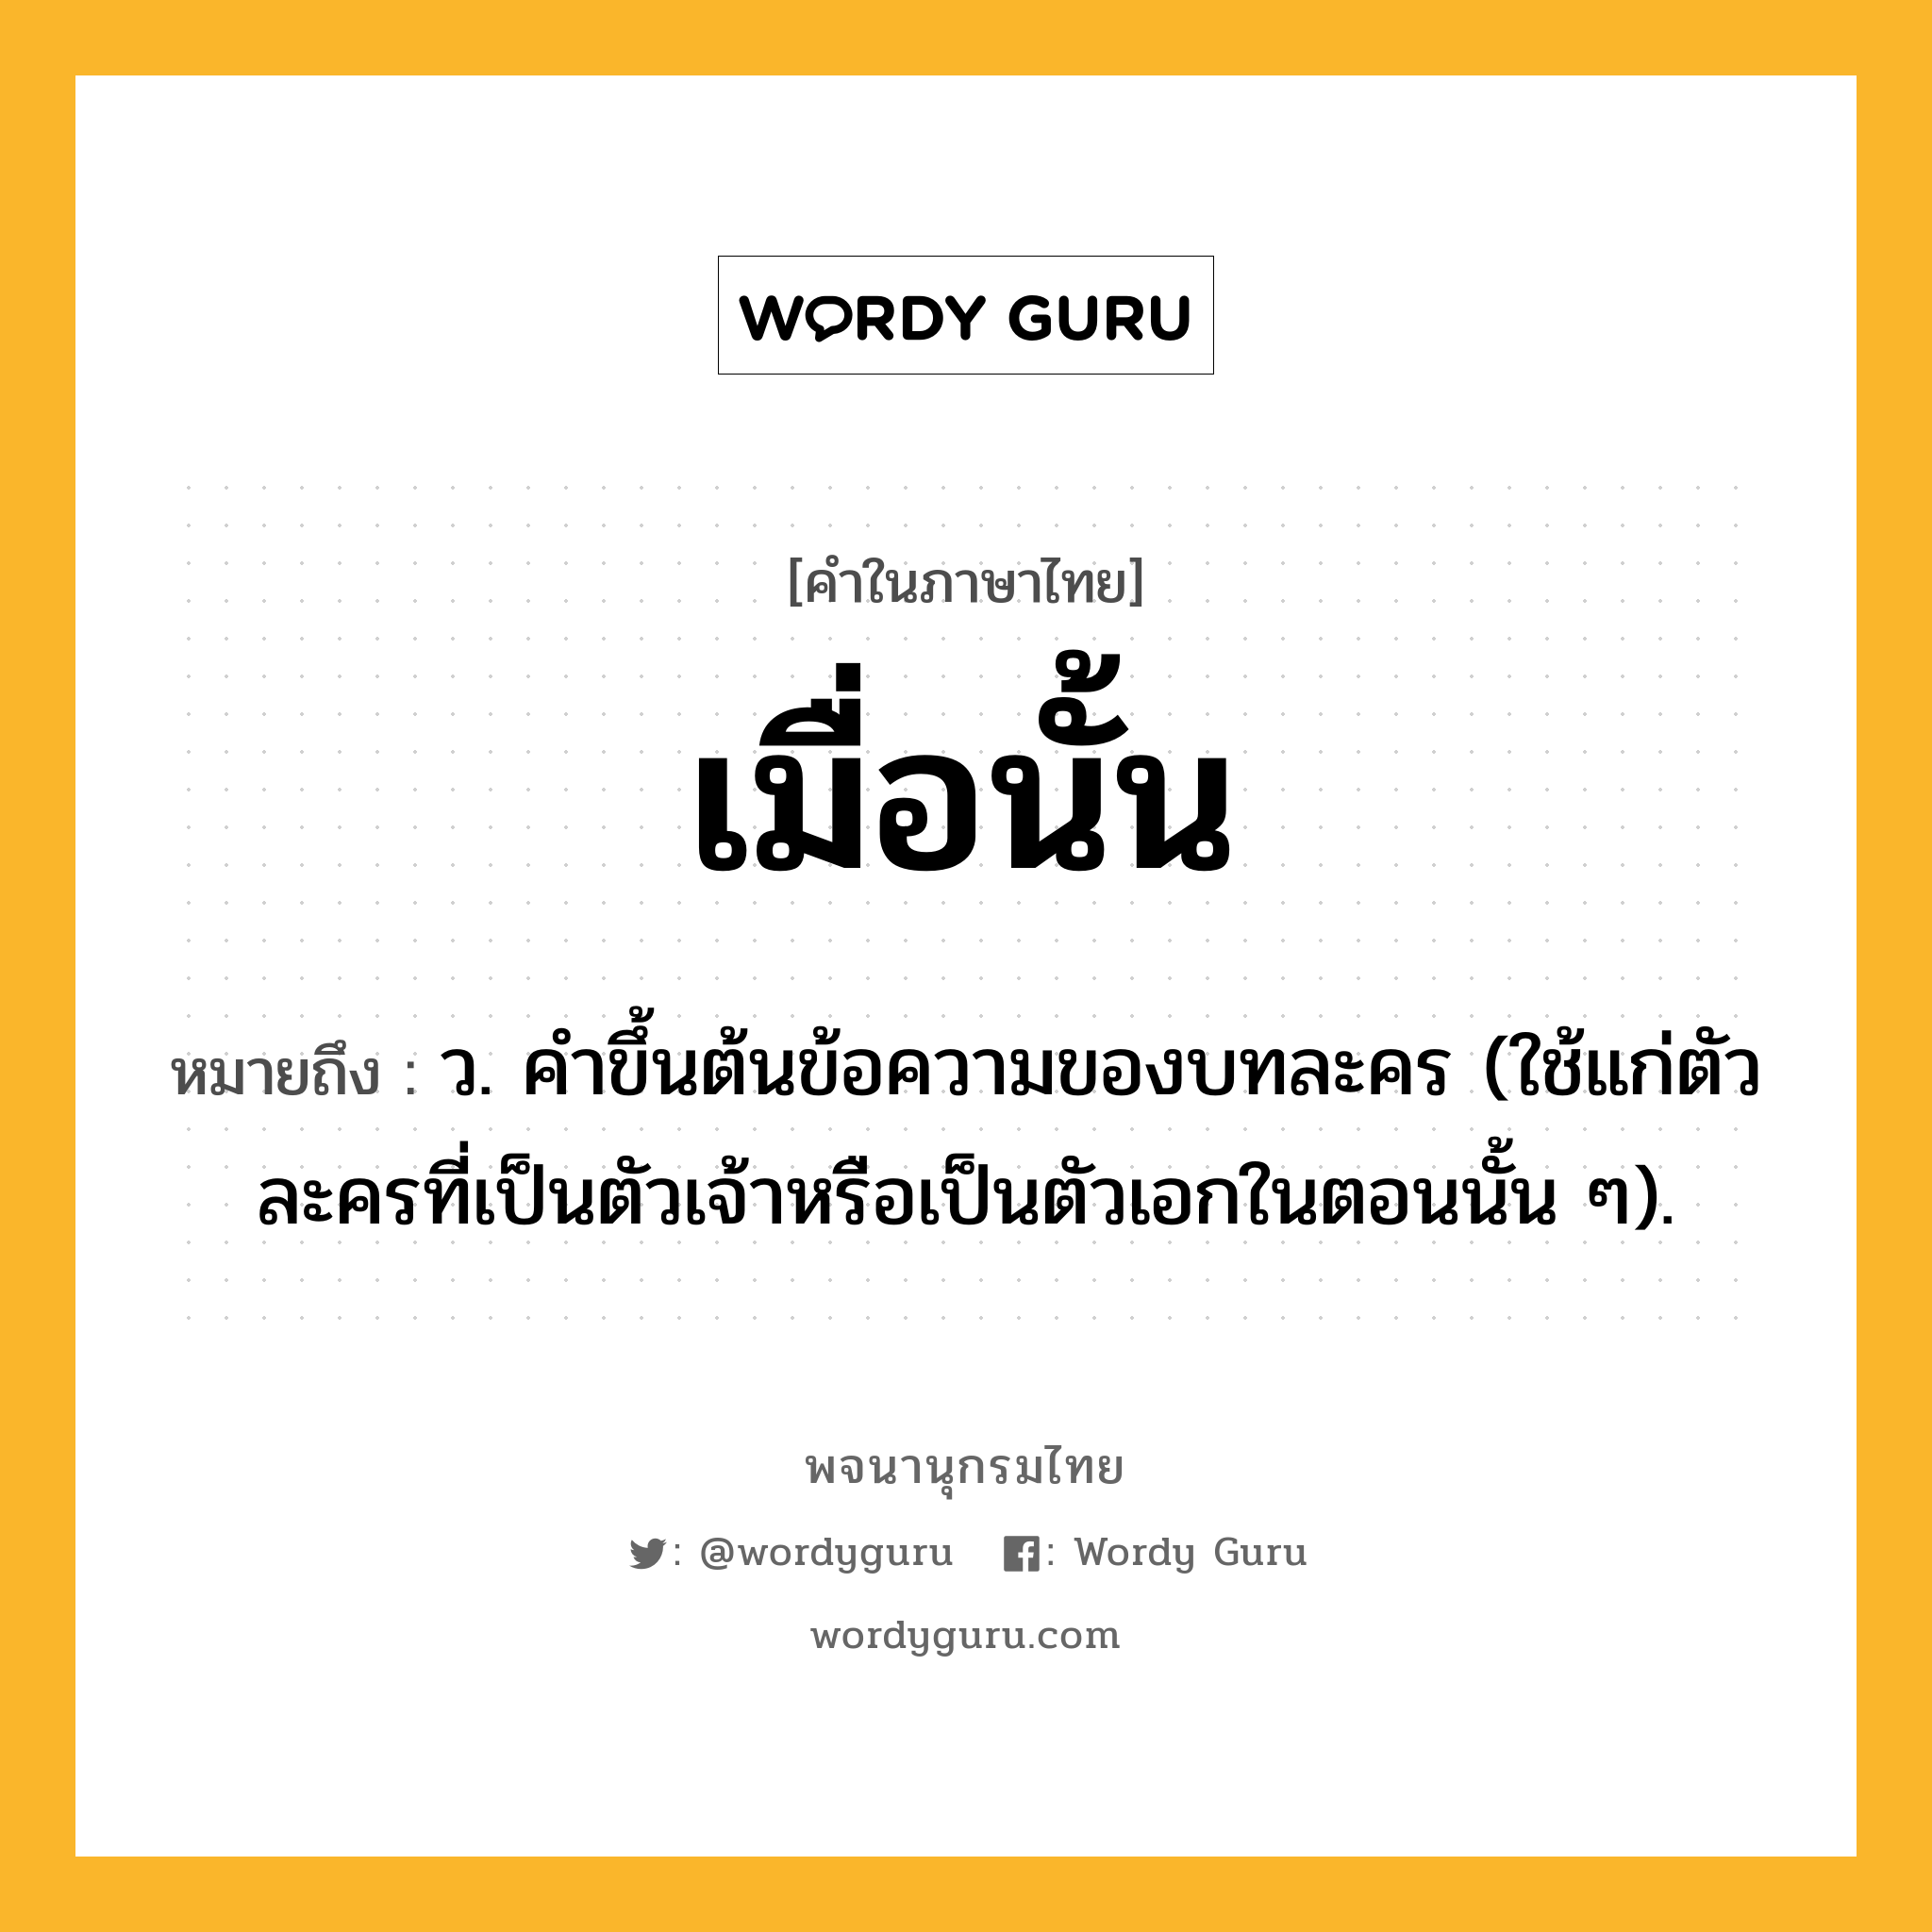 เมื่อนั้น หมายถึงอะไร?, คำในภาษาไทย เมื่อนั้น หมายถึง ว. คําขึ้นต้นข้อความของบทละคร (ใช้แก่ตัวละครที่เป็นตัวเจ้าหรือเป็นตัวเอกในตอนนั้น ๆ).